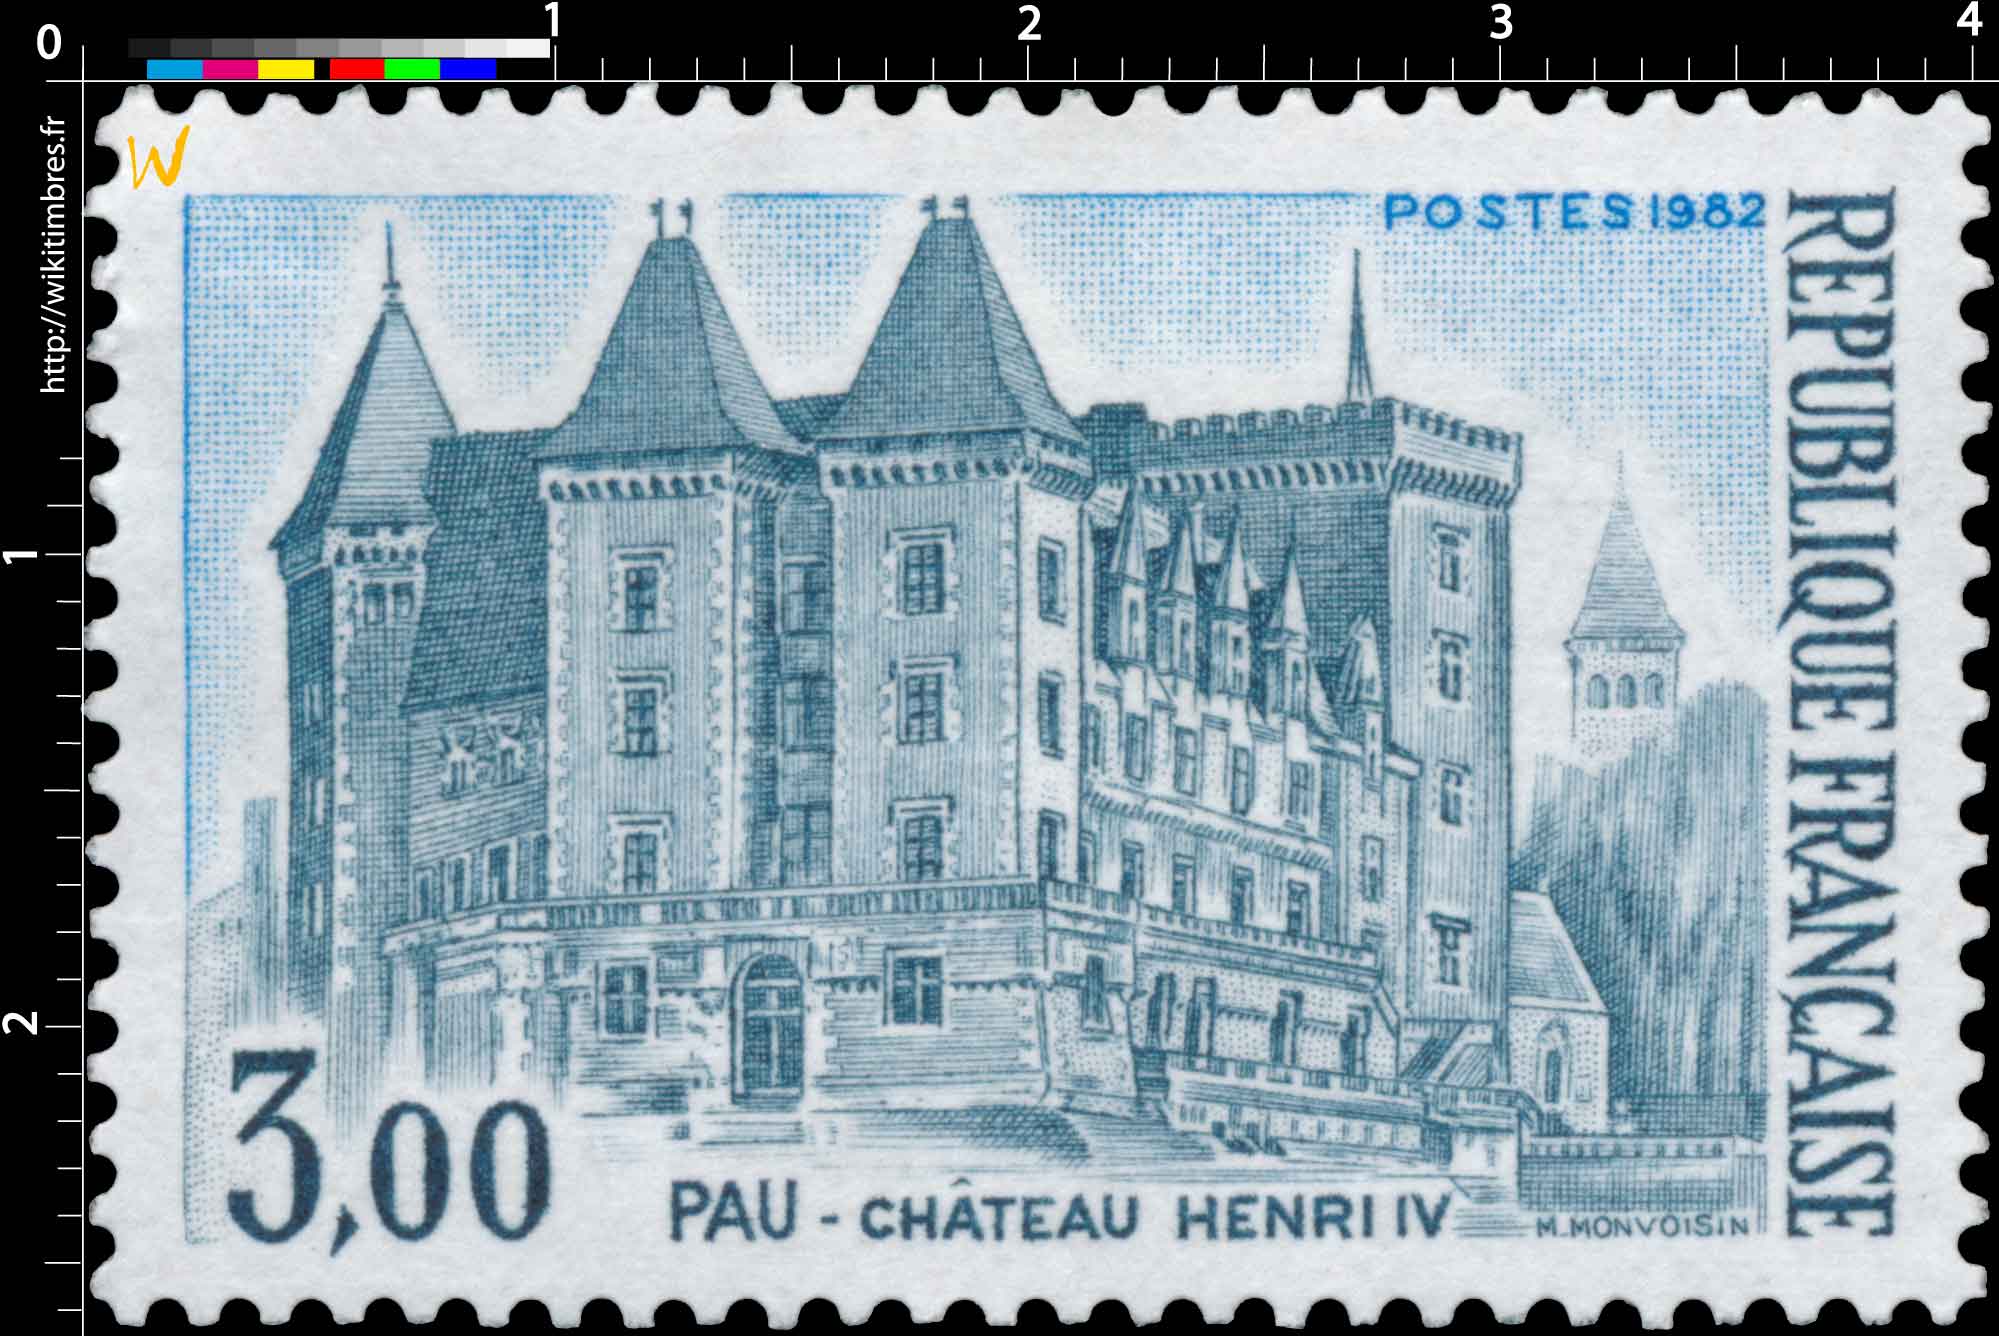 1982 PAU - CHÂTEAU HENRI IV